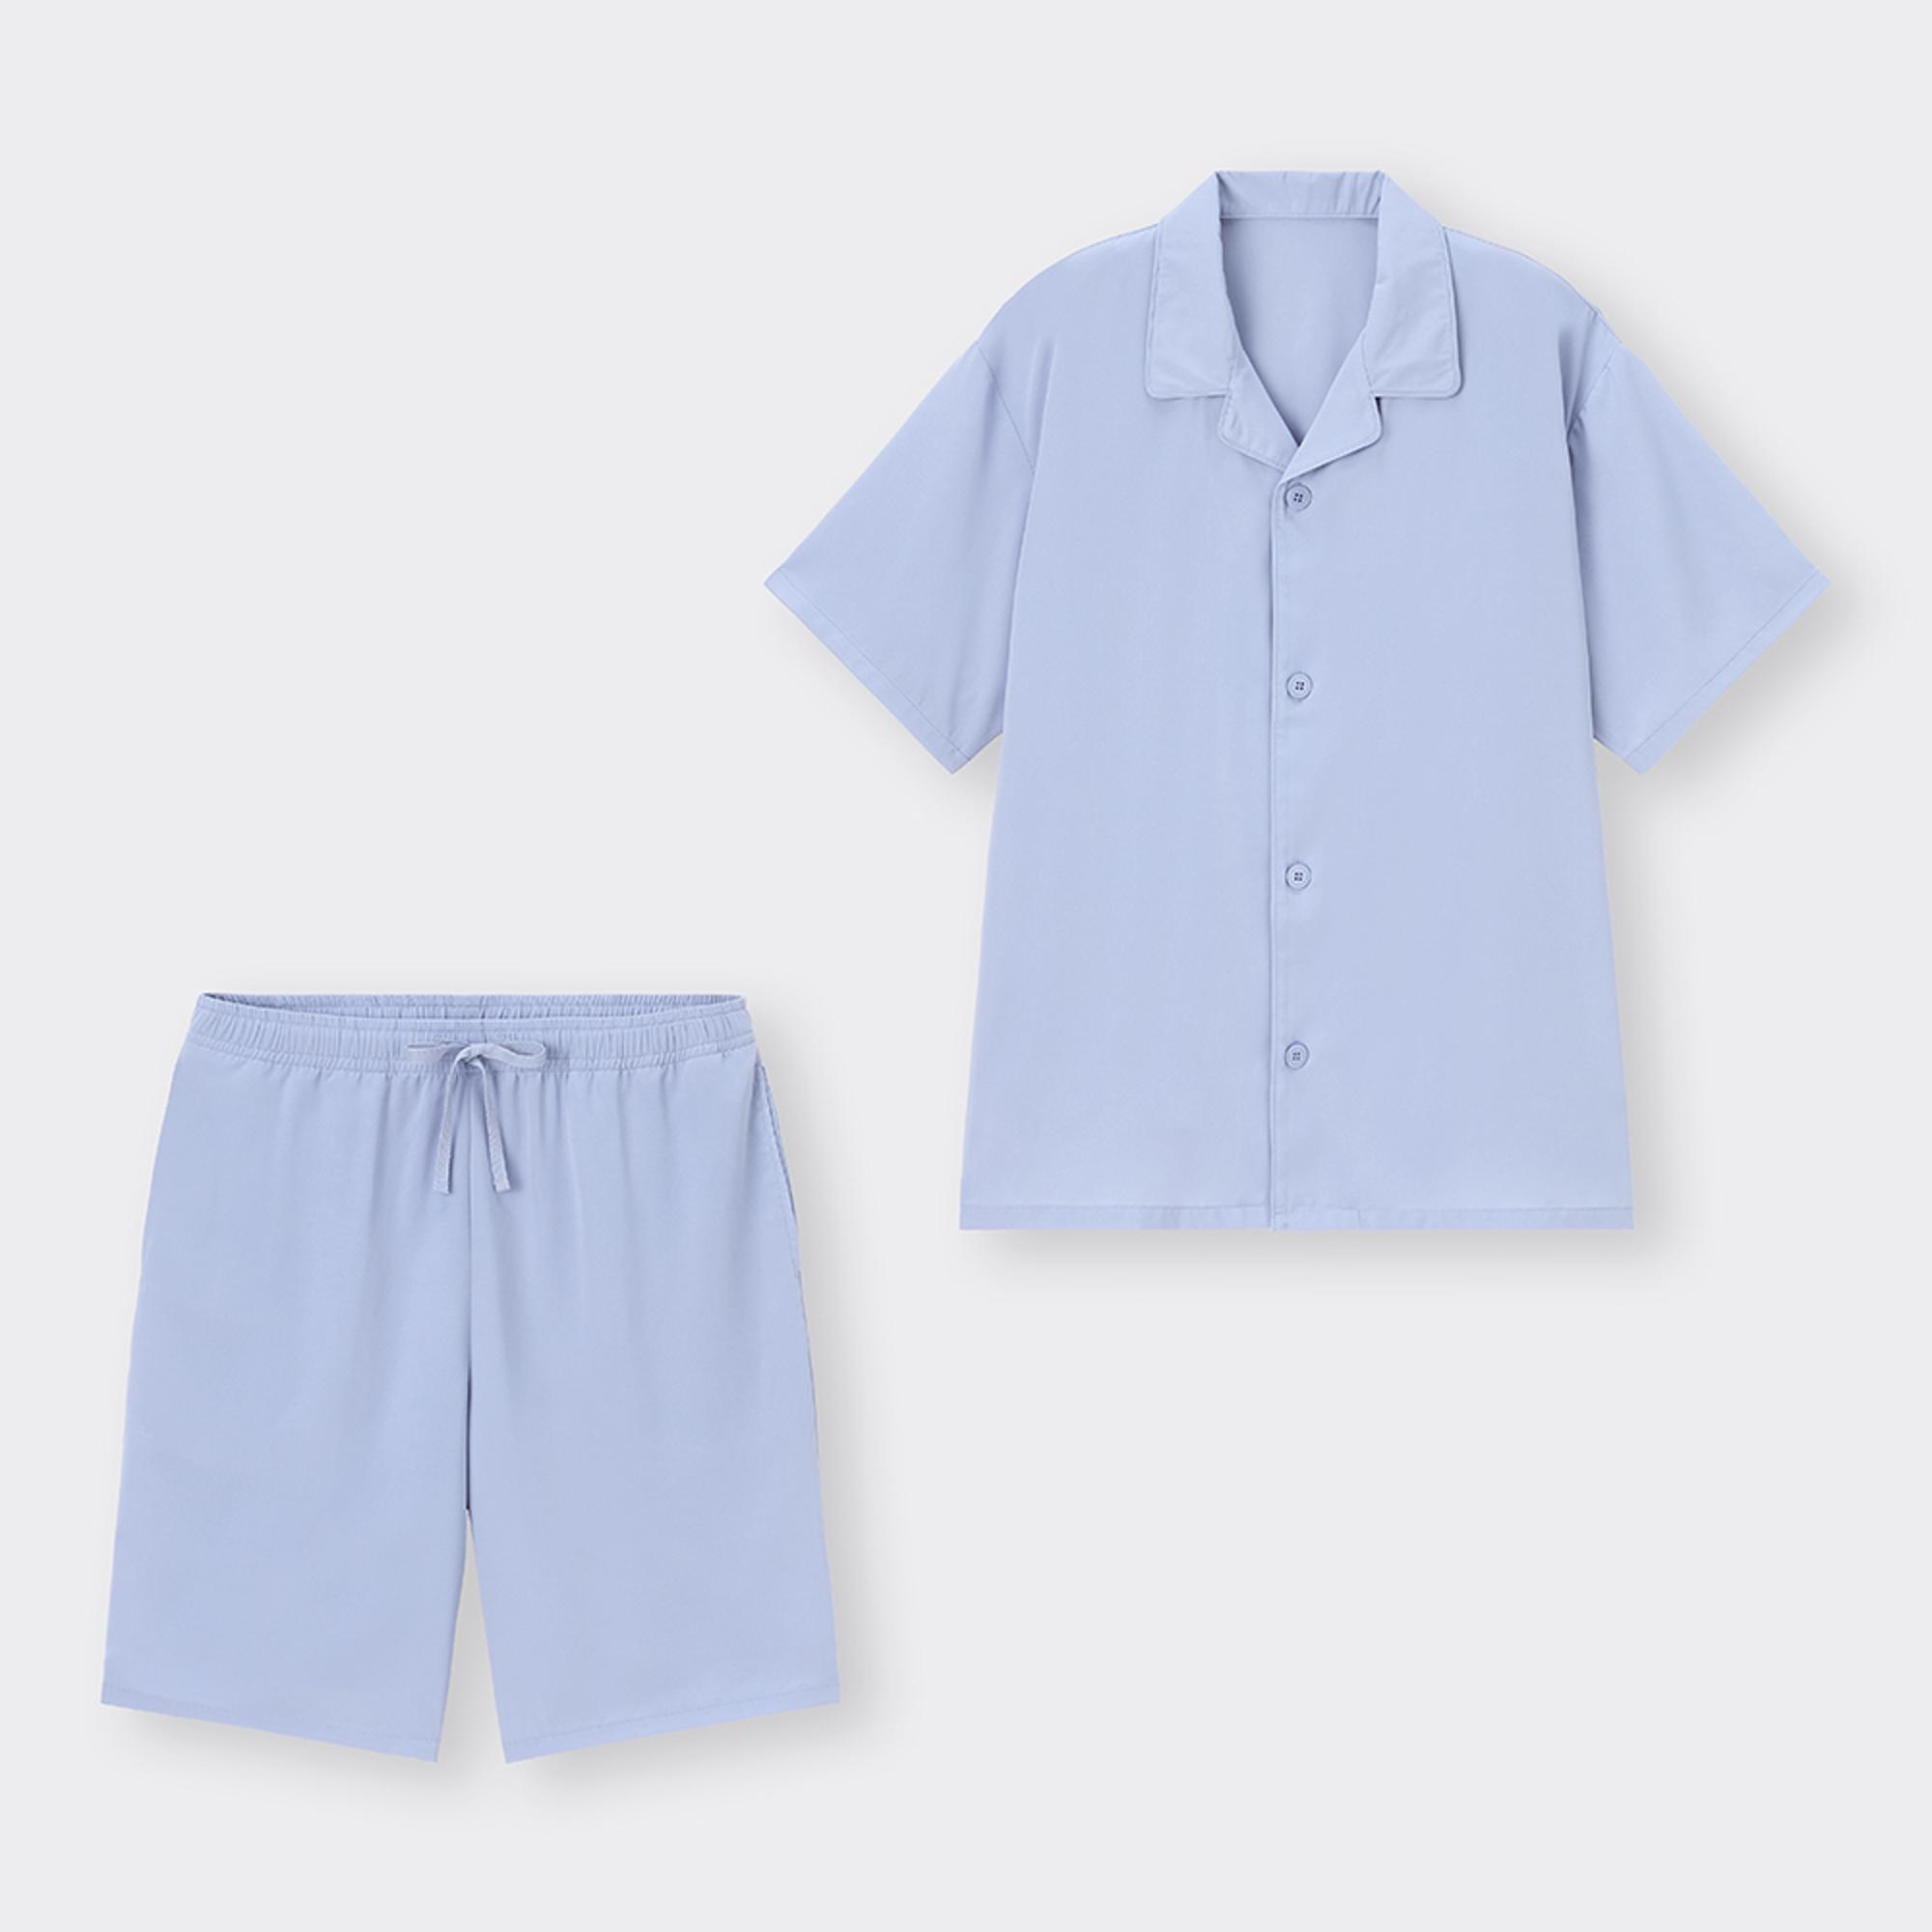 コールドフィールパジャマ(半袖&ショートパンツ)+X